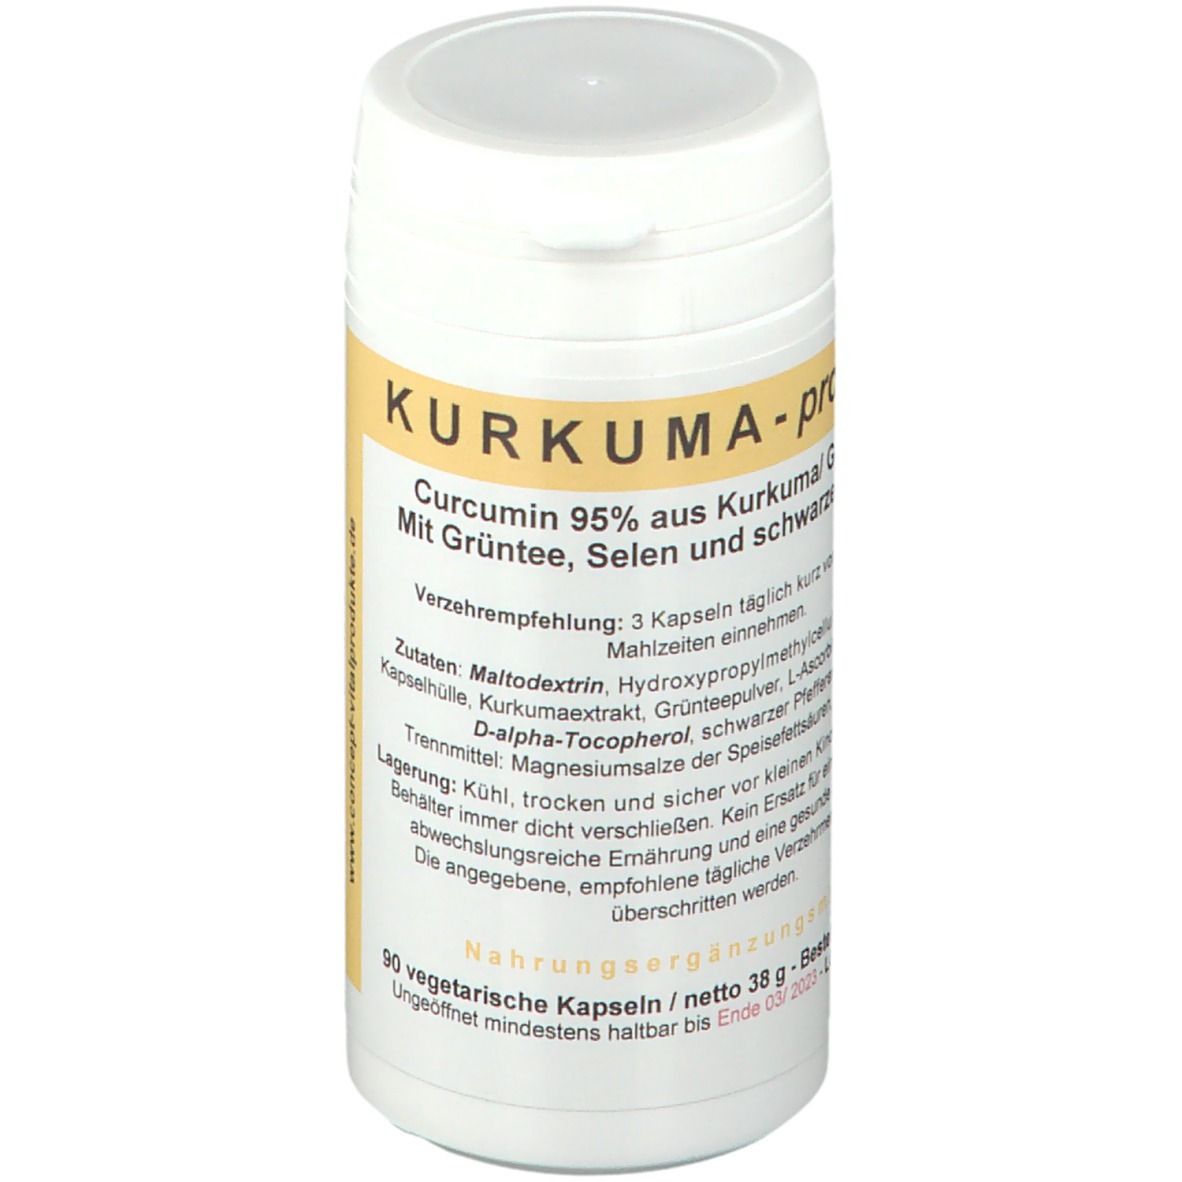 Image of Kurkuma - protect